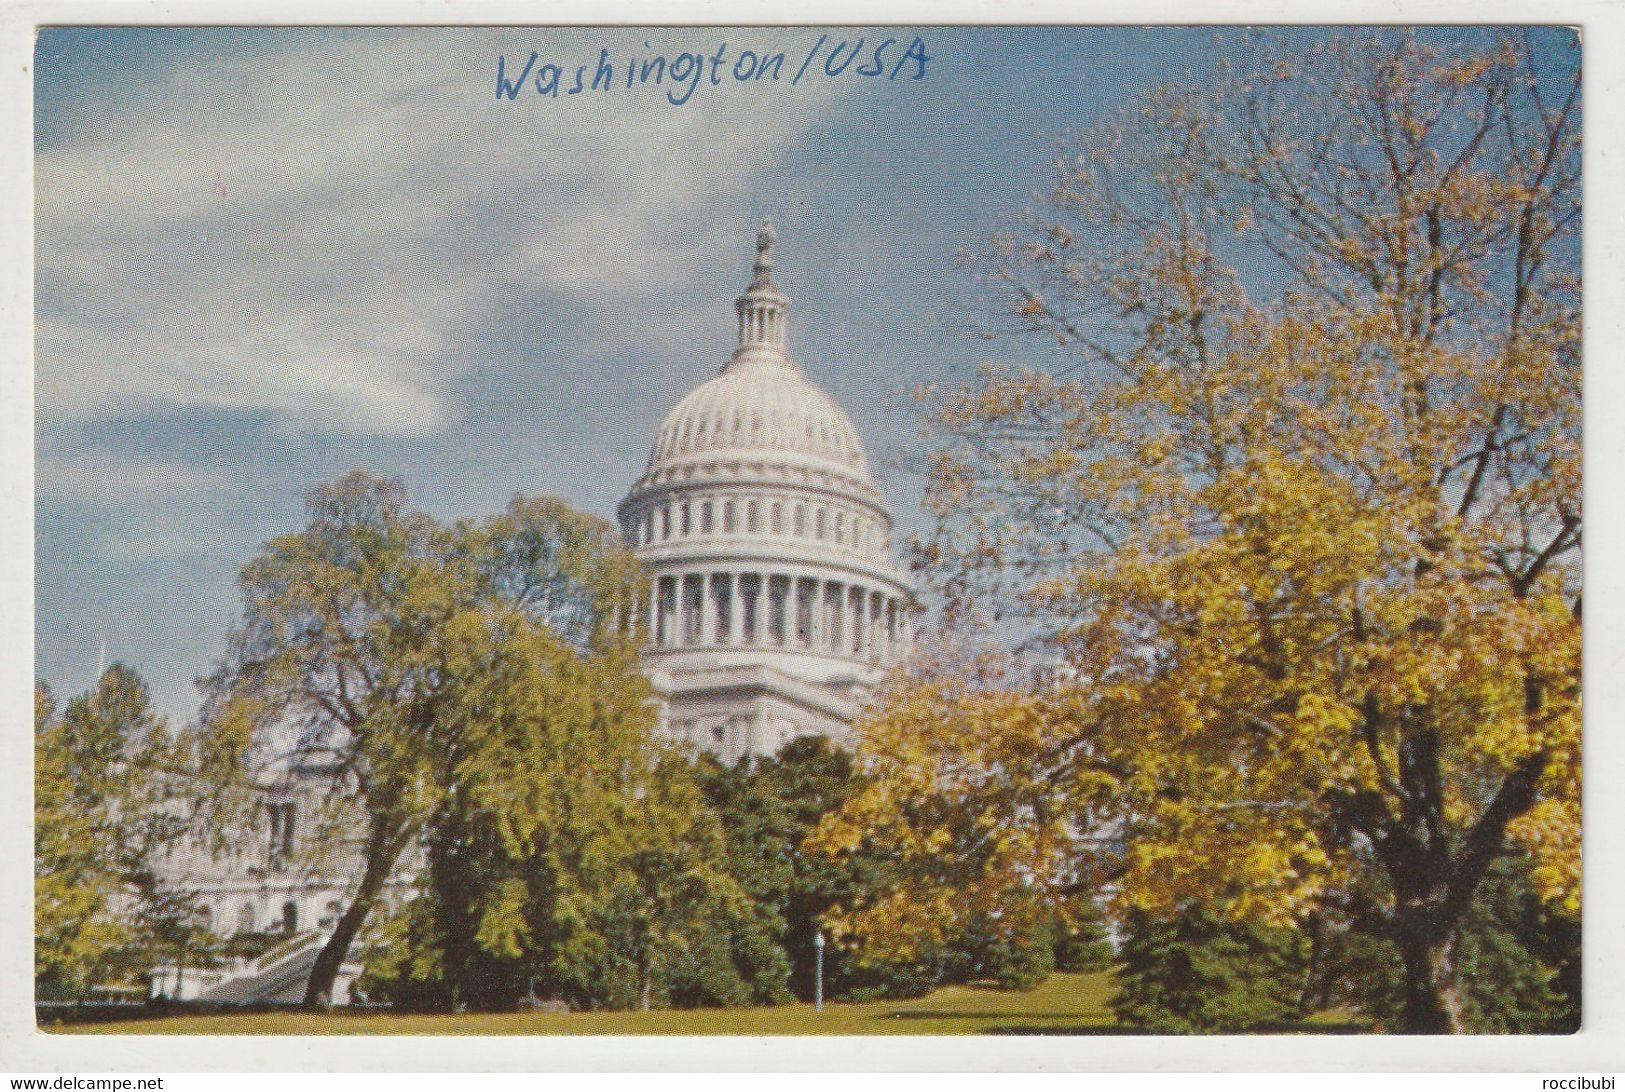 Washington, USA - Washington DC